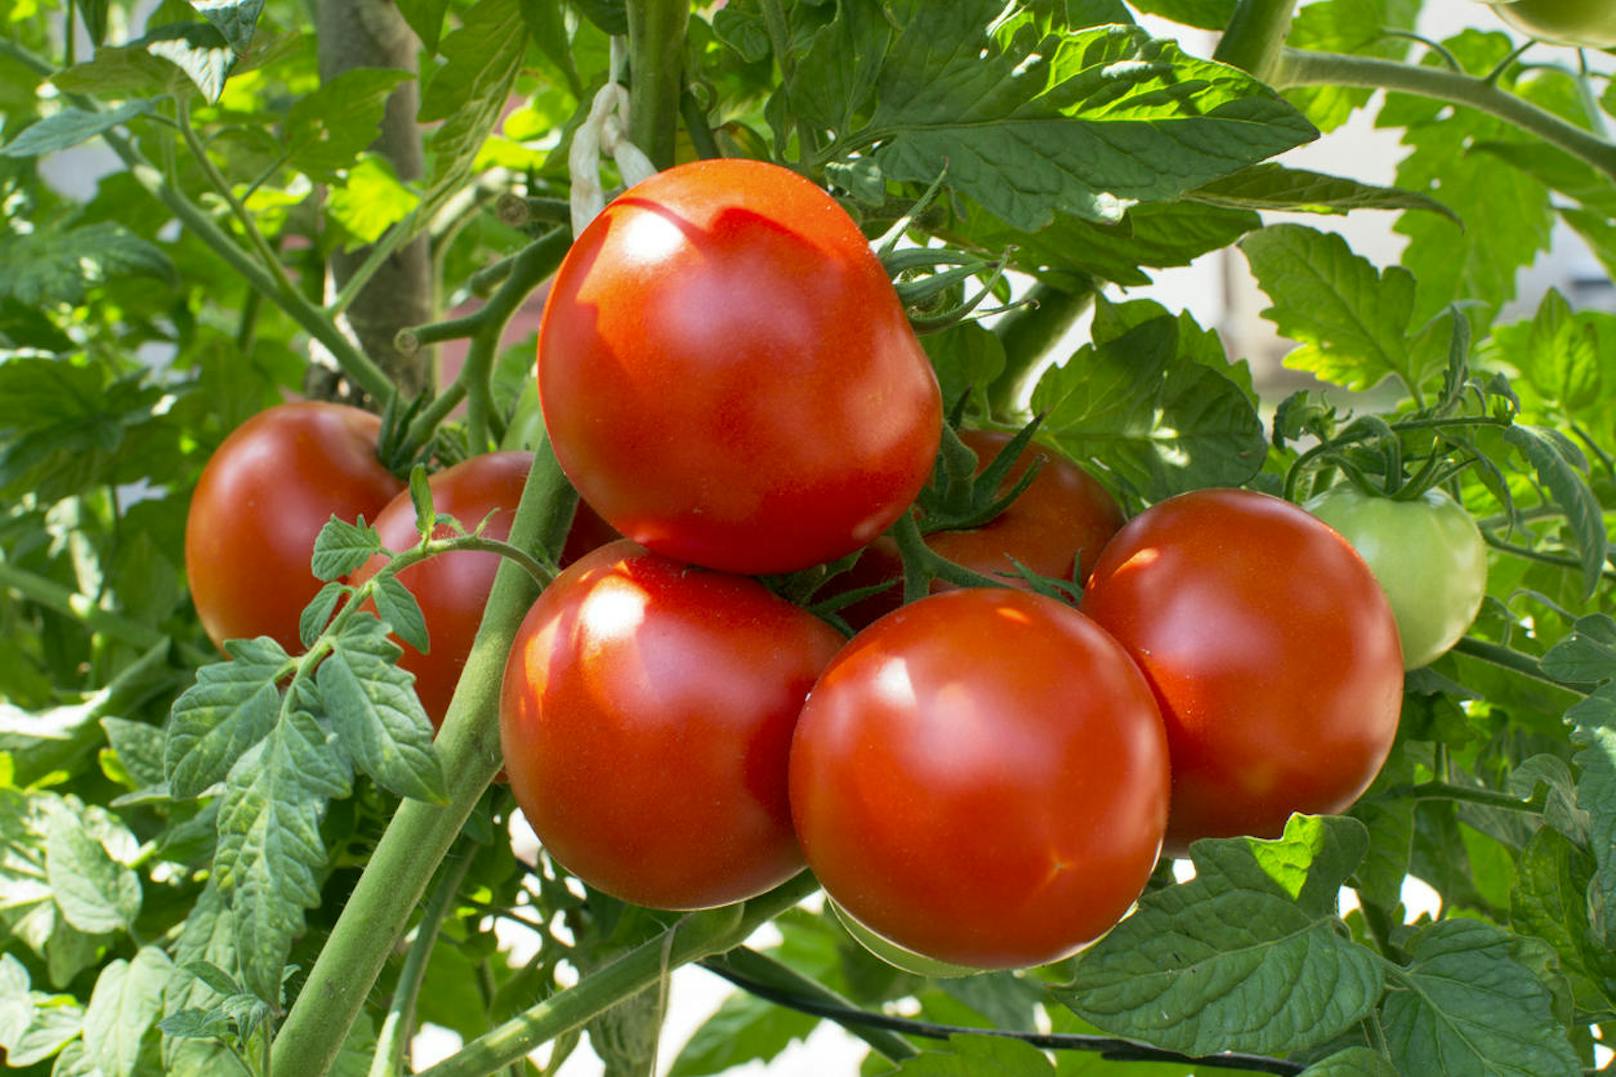 Ziel der Forschung mit dem Satelliten ist es, Astronauten bei Missionen in der Ferne mit frischen Tomaten und anderem Gemüse zu versorgen.